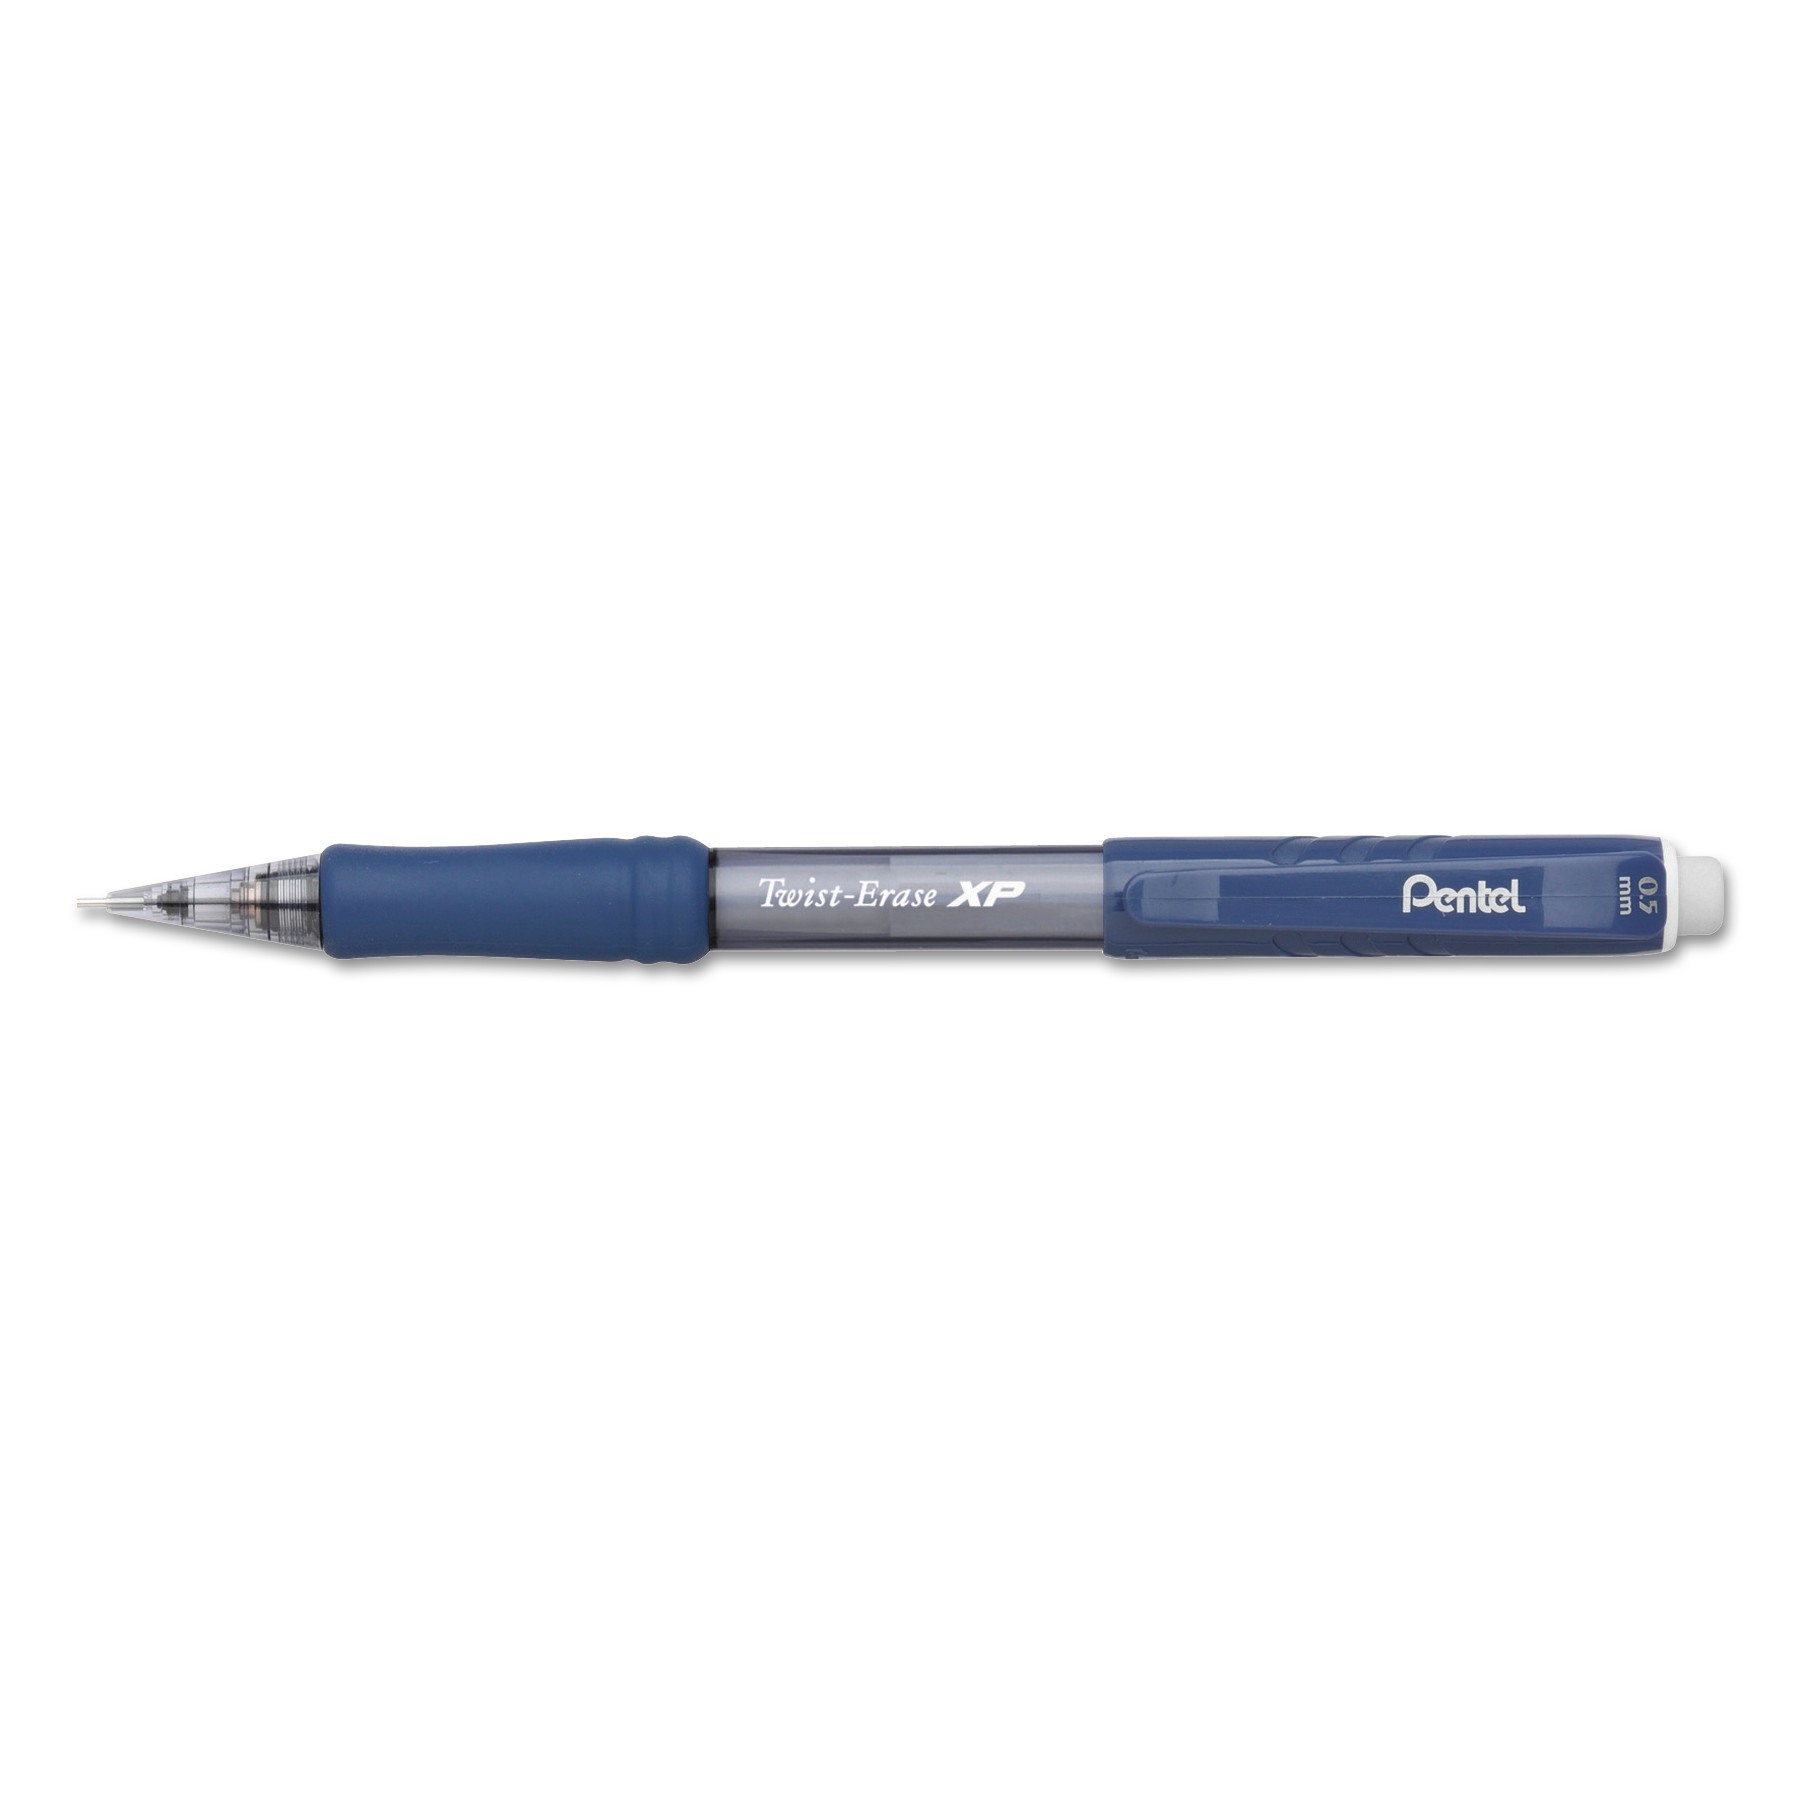  Pentel QE415C Twist-Erase EXPRESS Mechanical Pencil, 0.5 mm, HB (#2.5), Black Lead, Blue Barrel, Dozen (PENQE415C) 